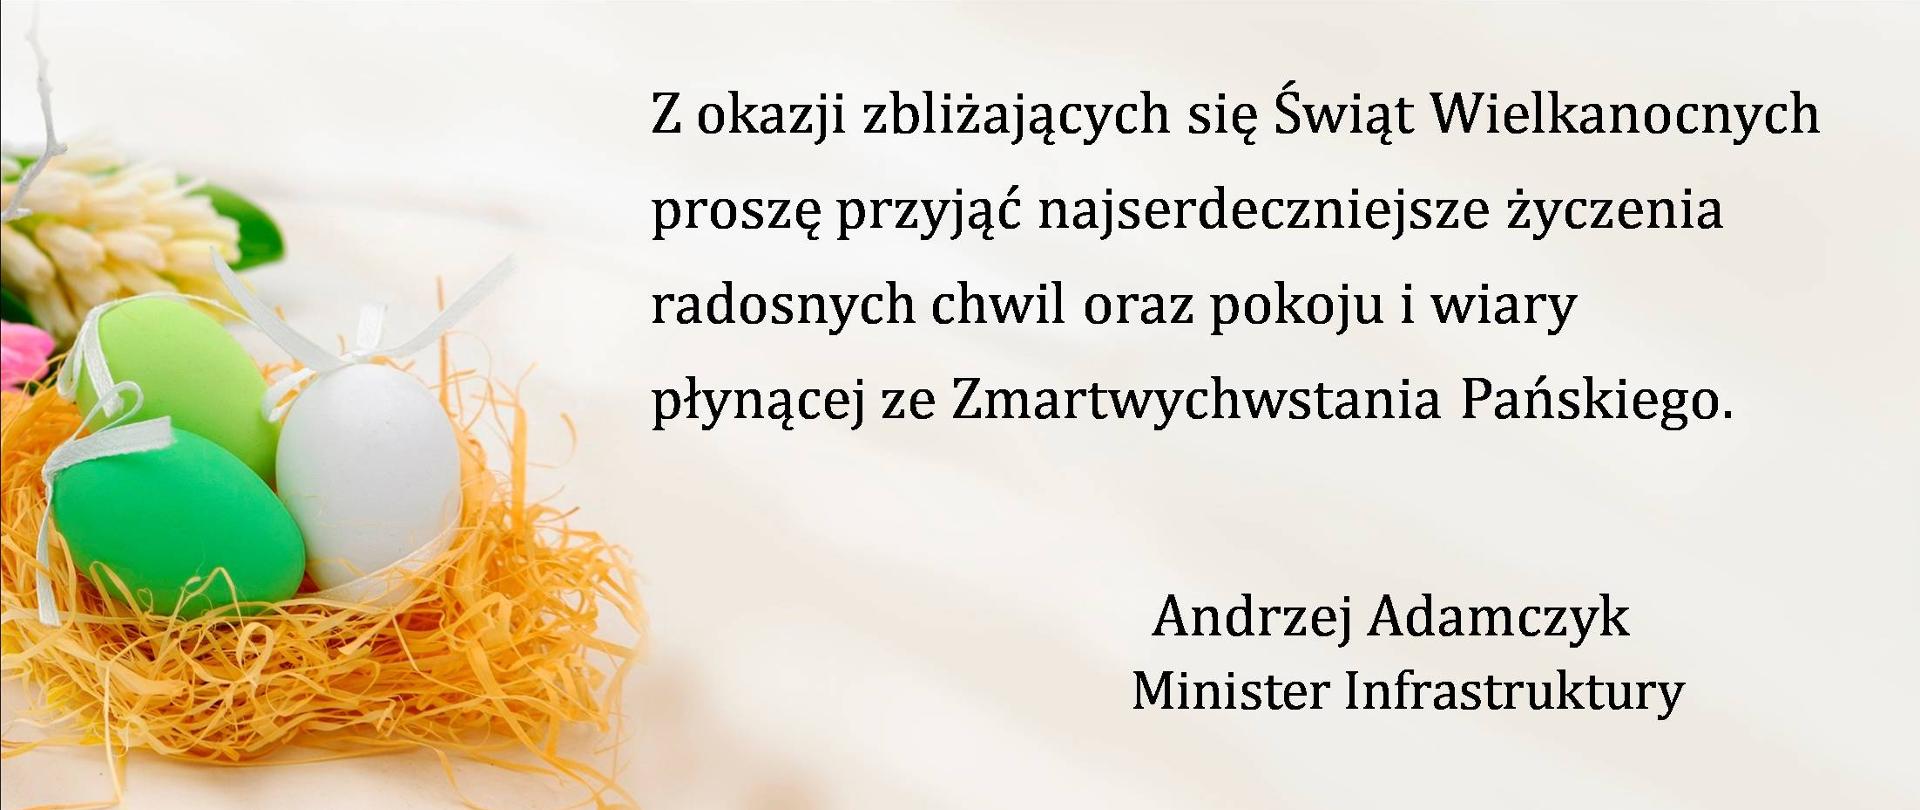 Życzenia ministra infrastruktury Andrzeja Adamczyka z okazji Świąt Wielkanocnych